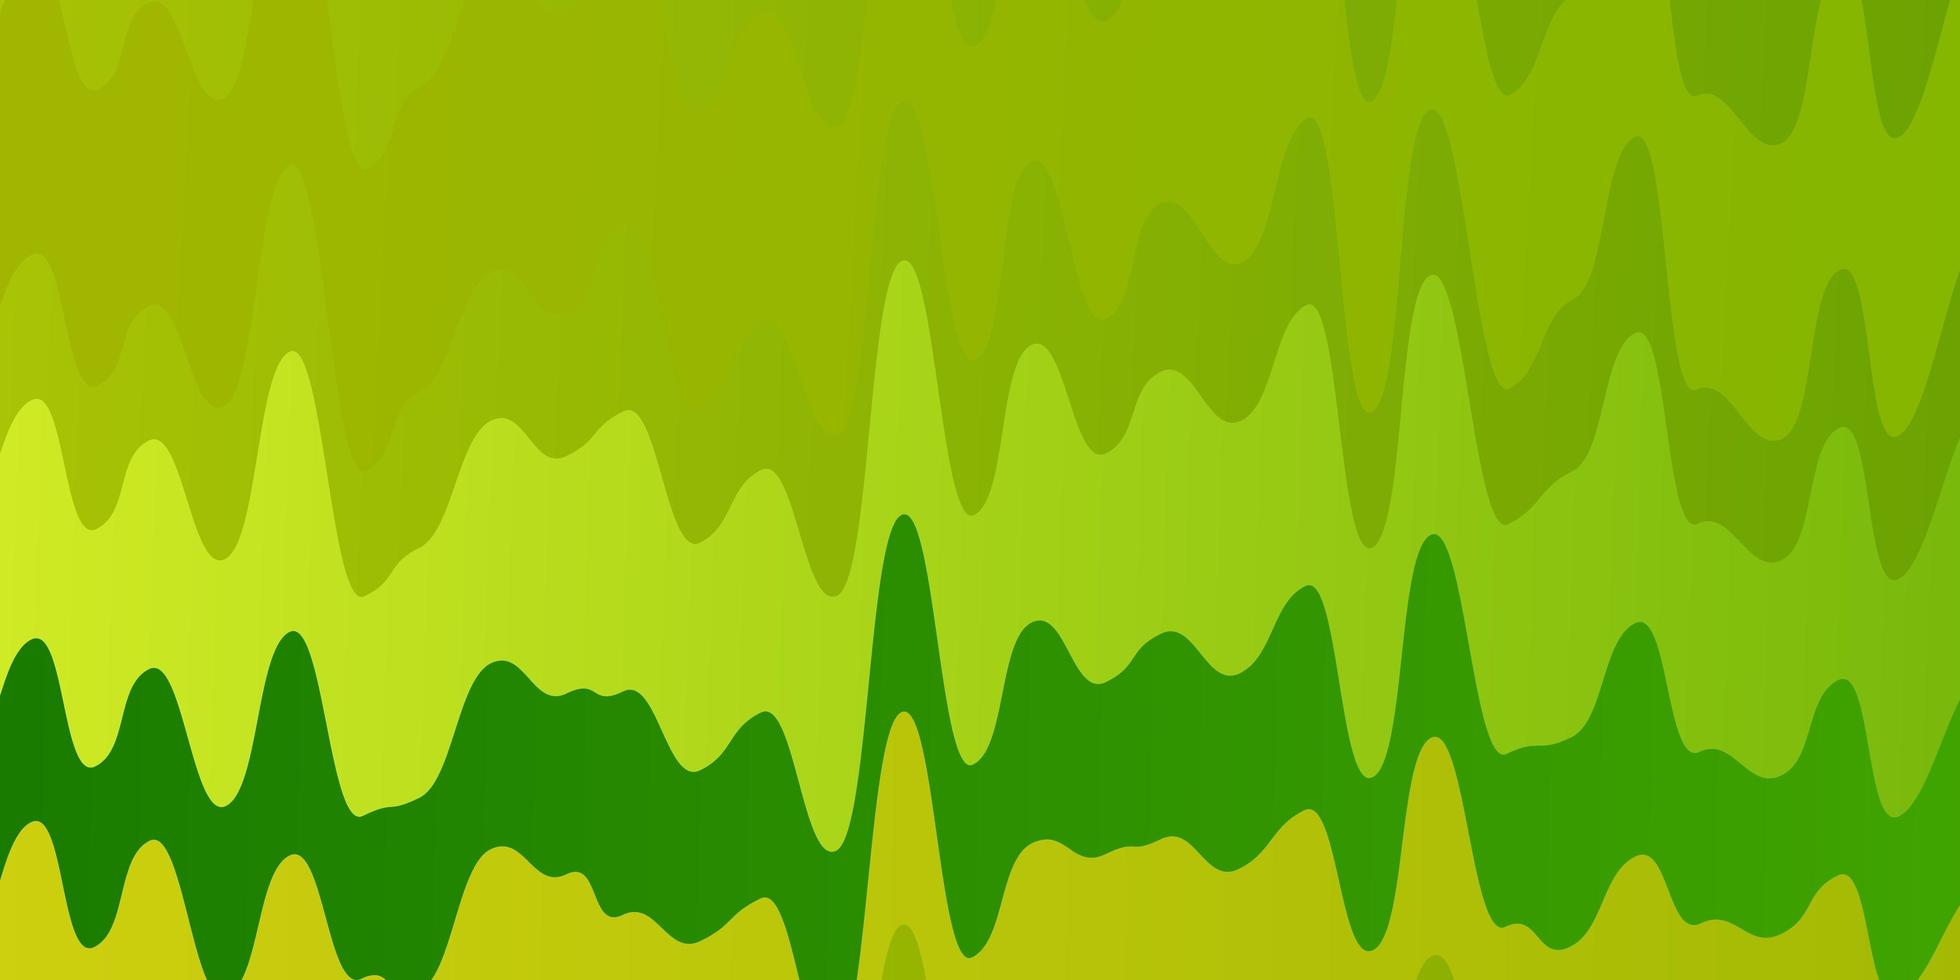 Fondo de vector verde claro, amarillo con arco circular. Ilustración en estilo de semitono con curvas de degradado. plantilla para su diseño de interfaz de usuario.